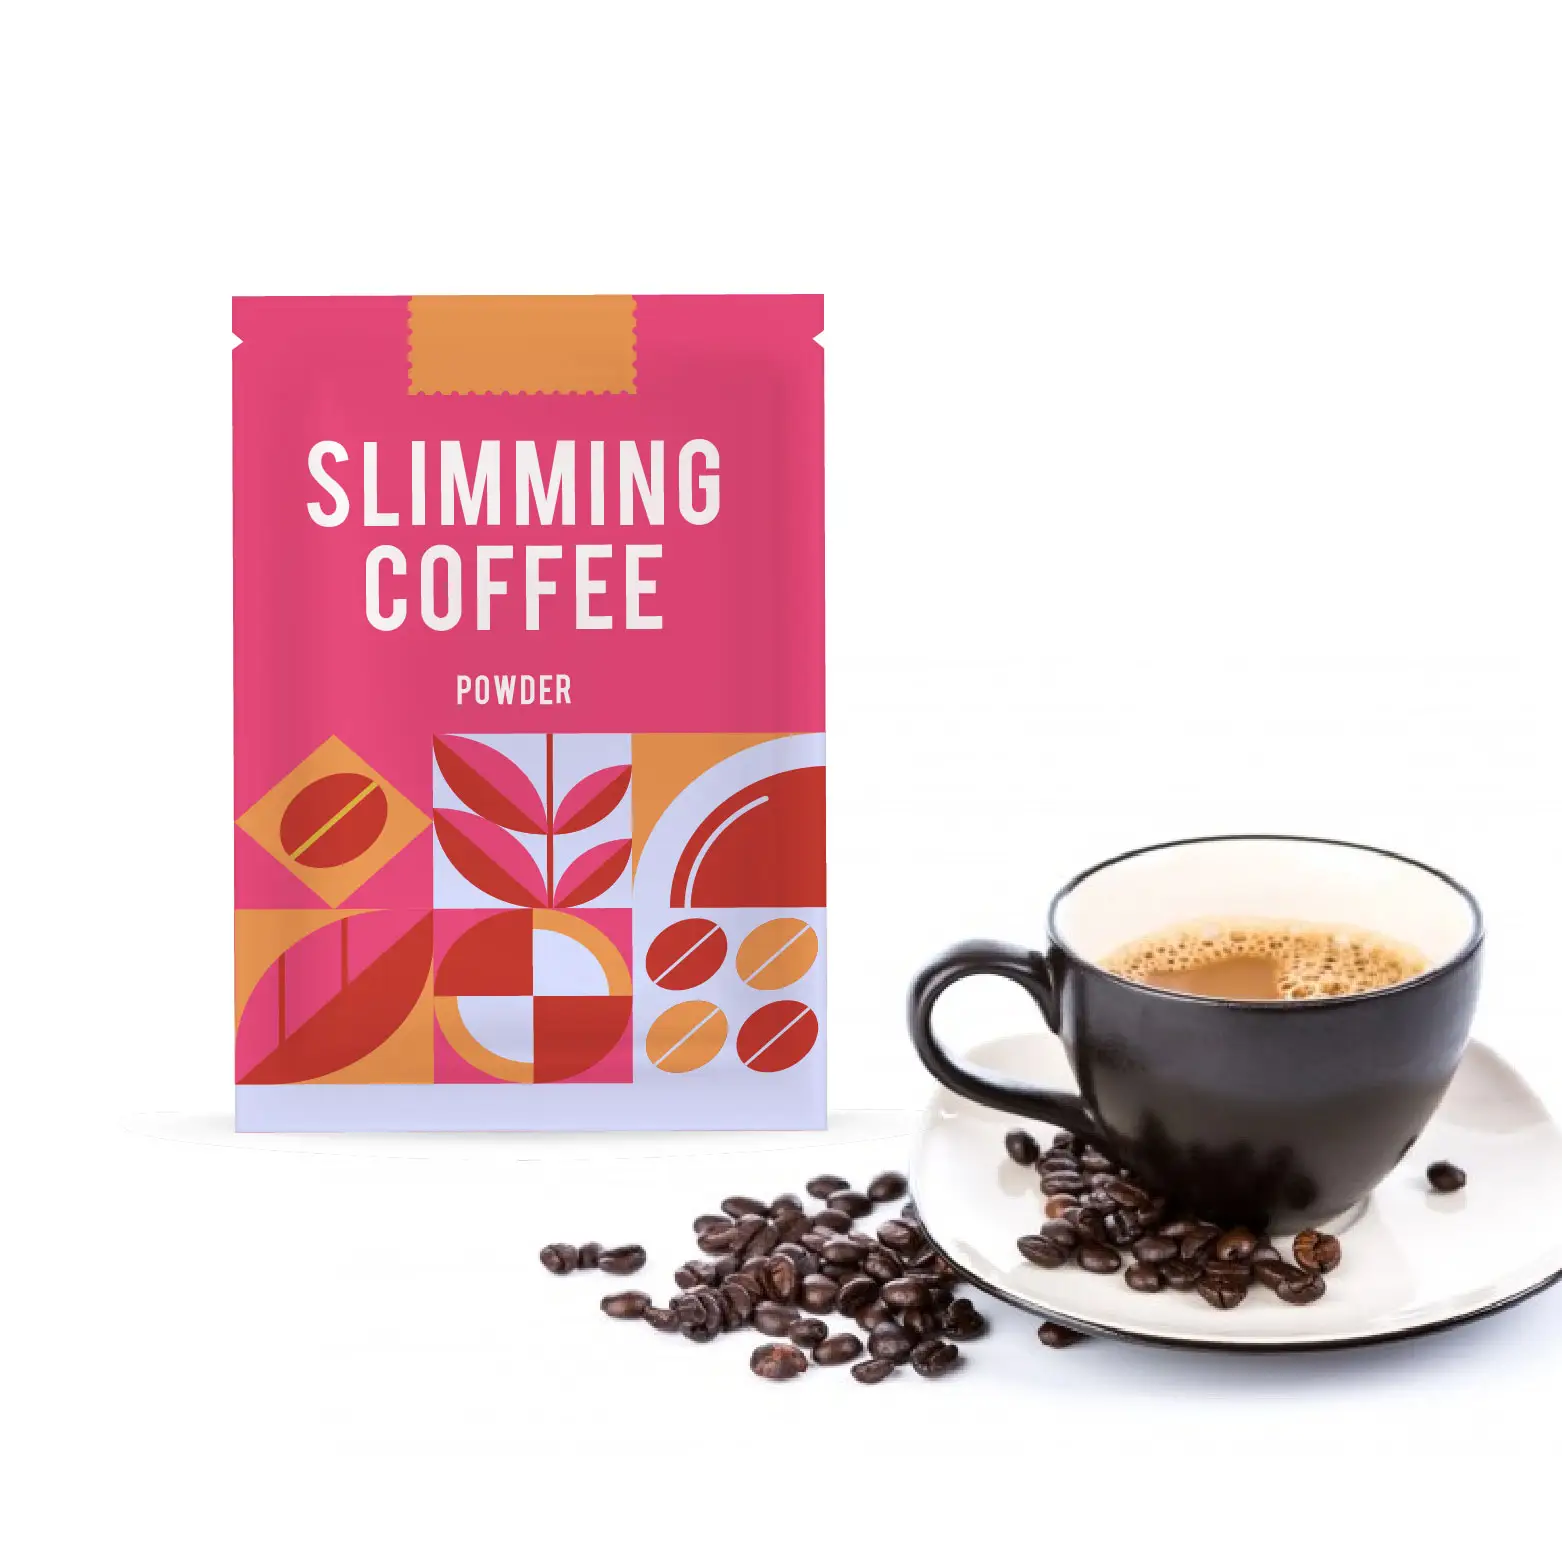 La migliore vendita di caffè dimagrante da 100g più Mix di polvere istantanea marca bevanda sana bevanda dieta controllo della perdita di peso